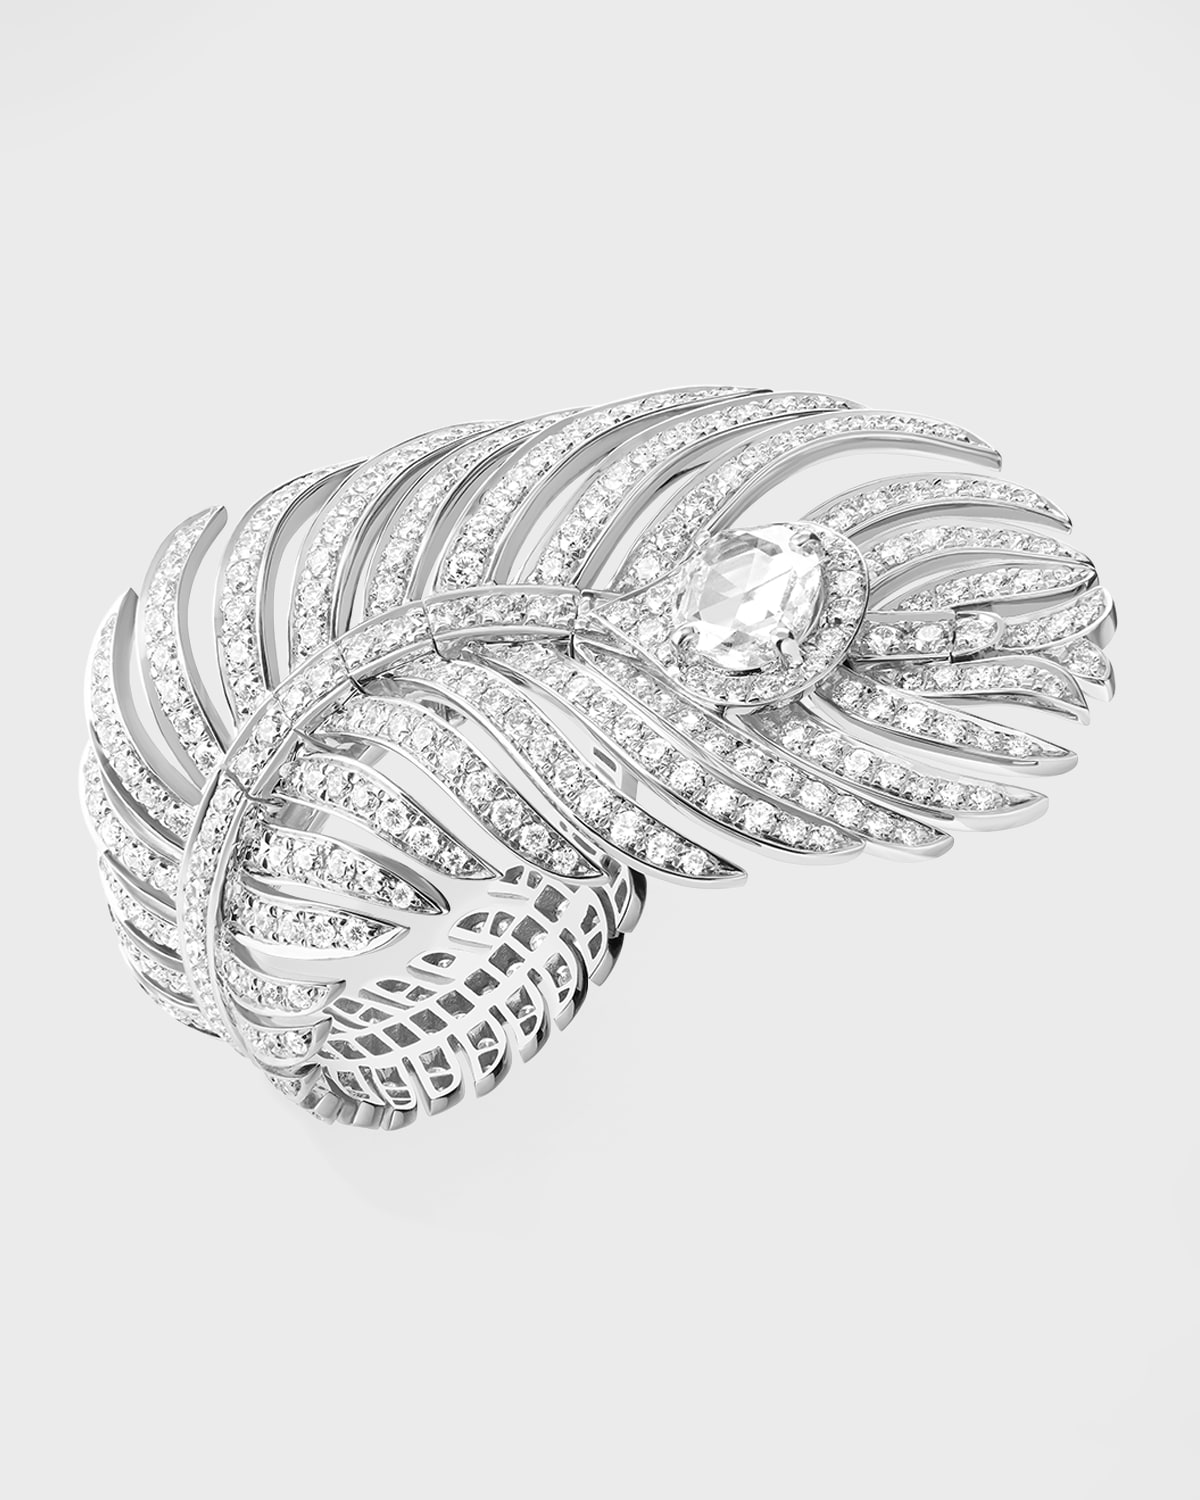 Plume de Paon White Gold Diamond Ring, Size 52